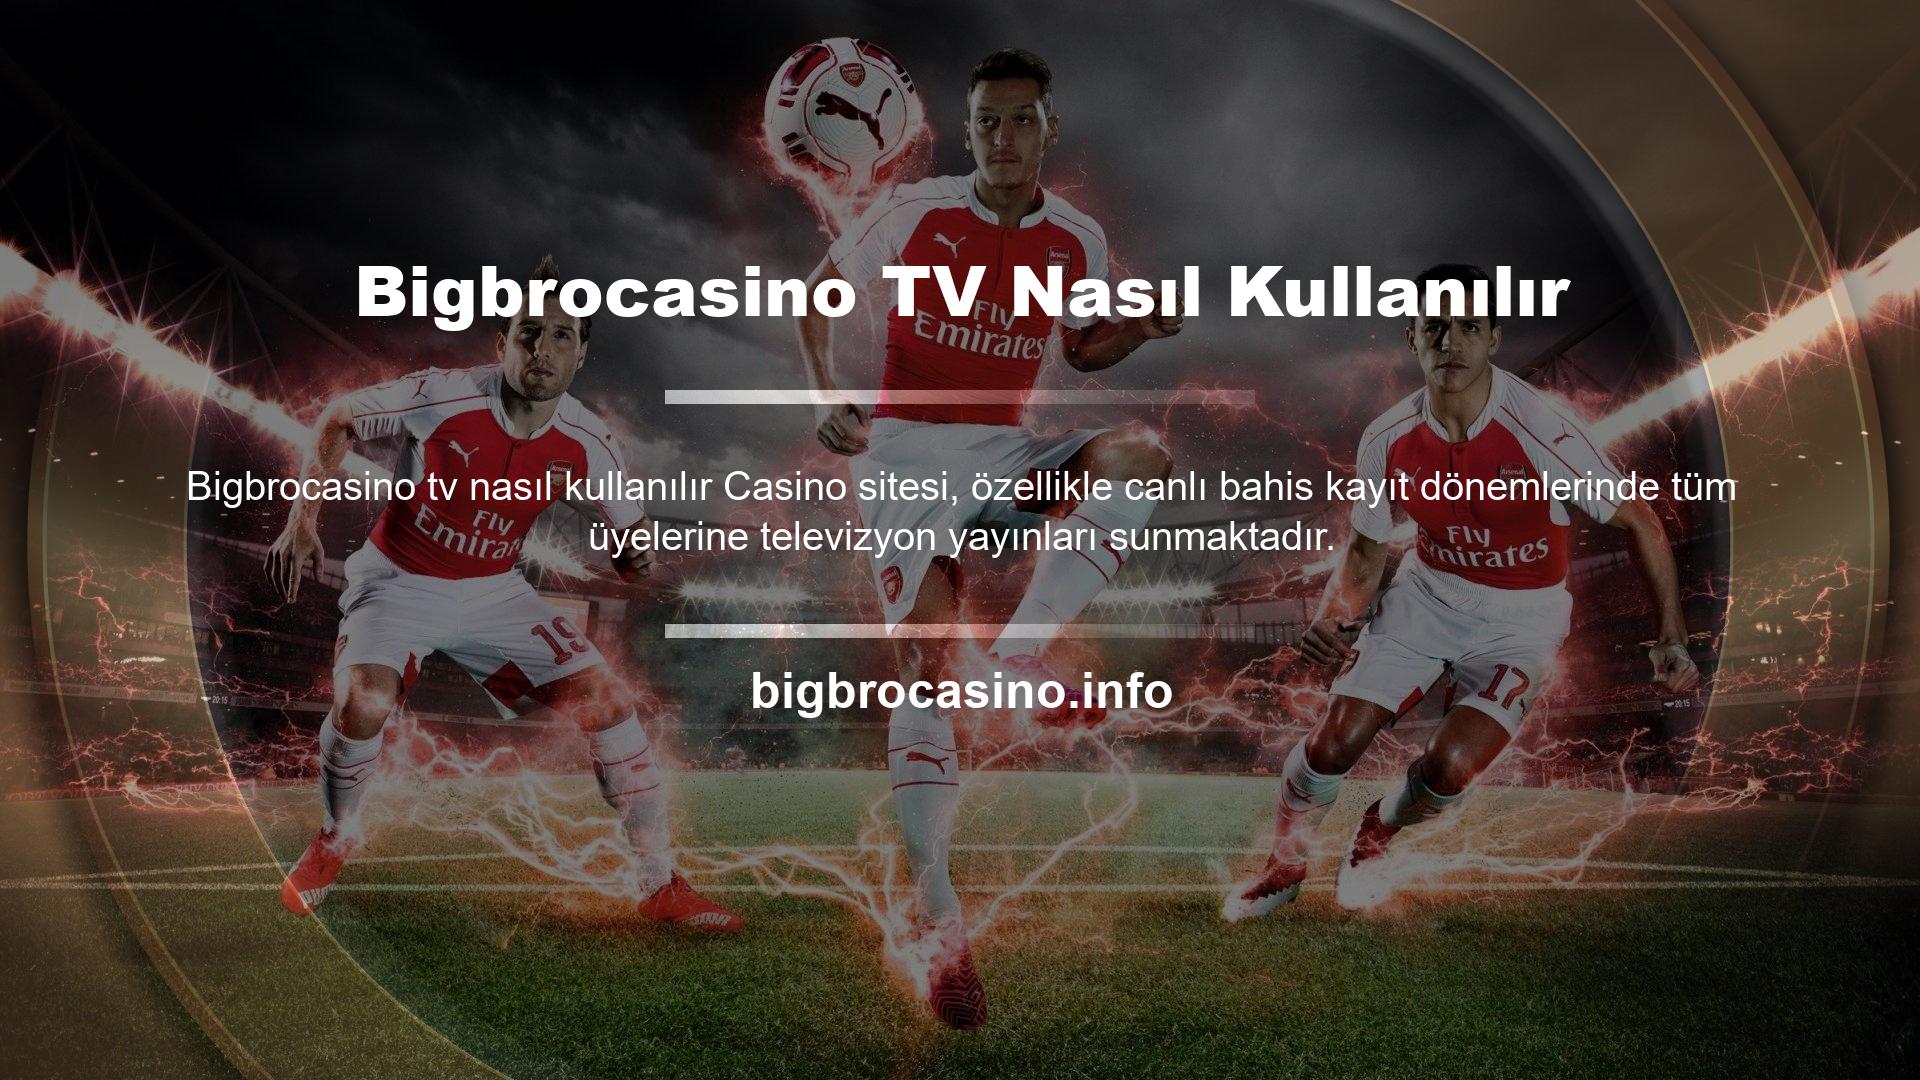 Bigbrocasino TV basketbol, ​​futbol ve tenis gibi birçok spor oyunu sunmaktadır